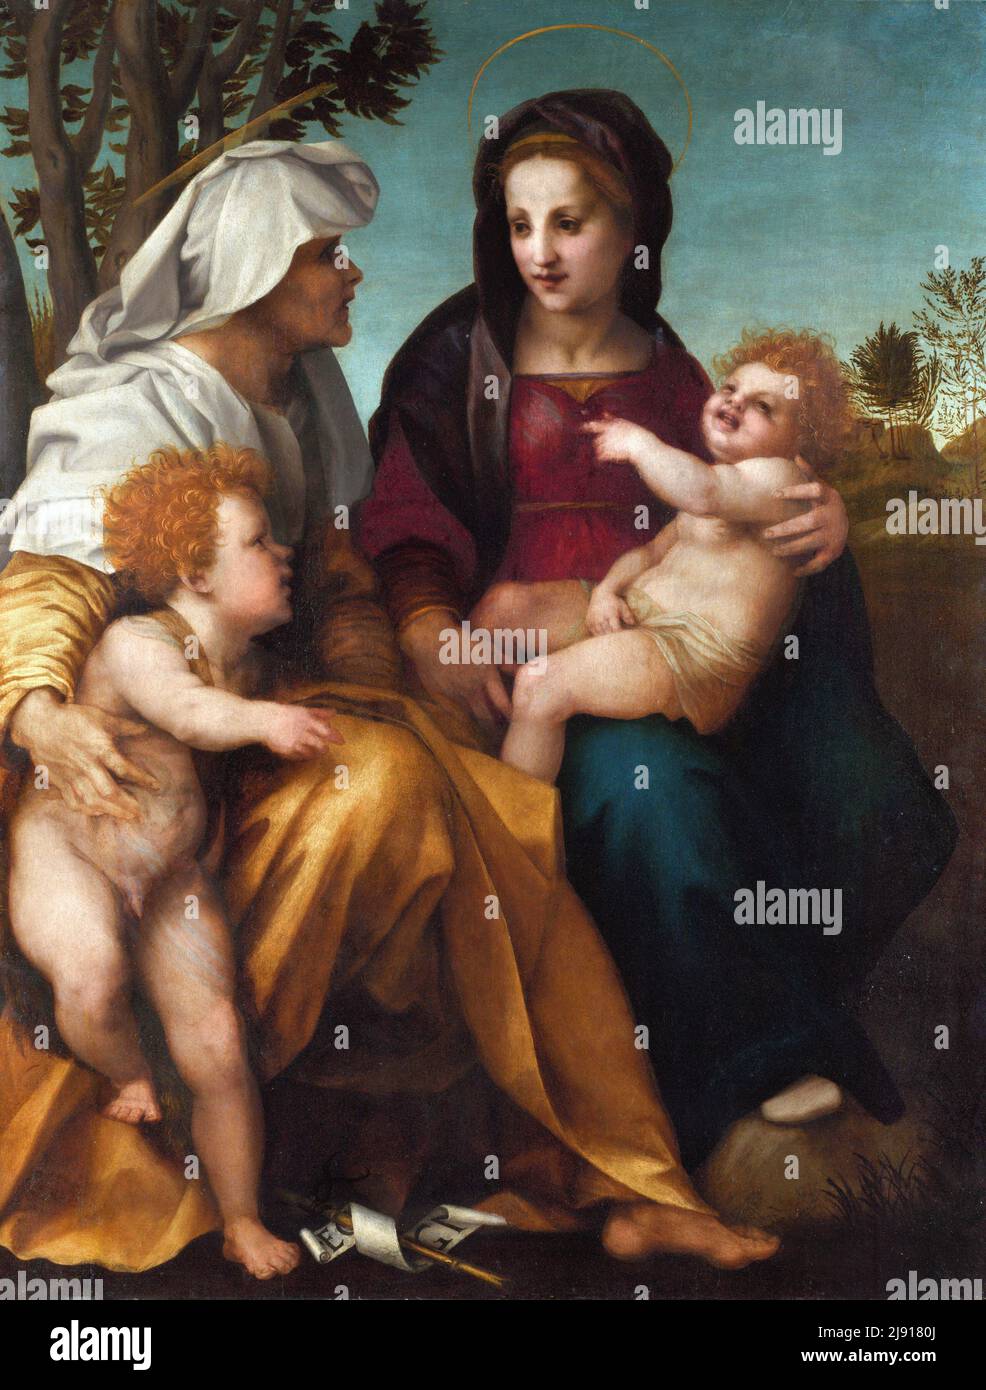 La Virgen y el Niño con Santa Isabel y San Juan Bautista por Andrea del Sarto (Andrea d'Agnolo: 1486-1530), aceite sobre madera, c. 1513 Foto de stock